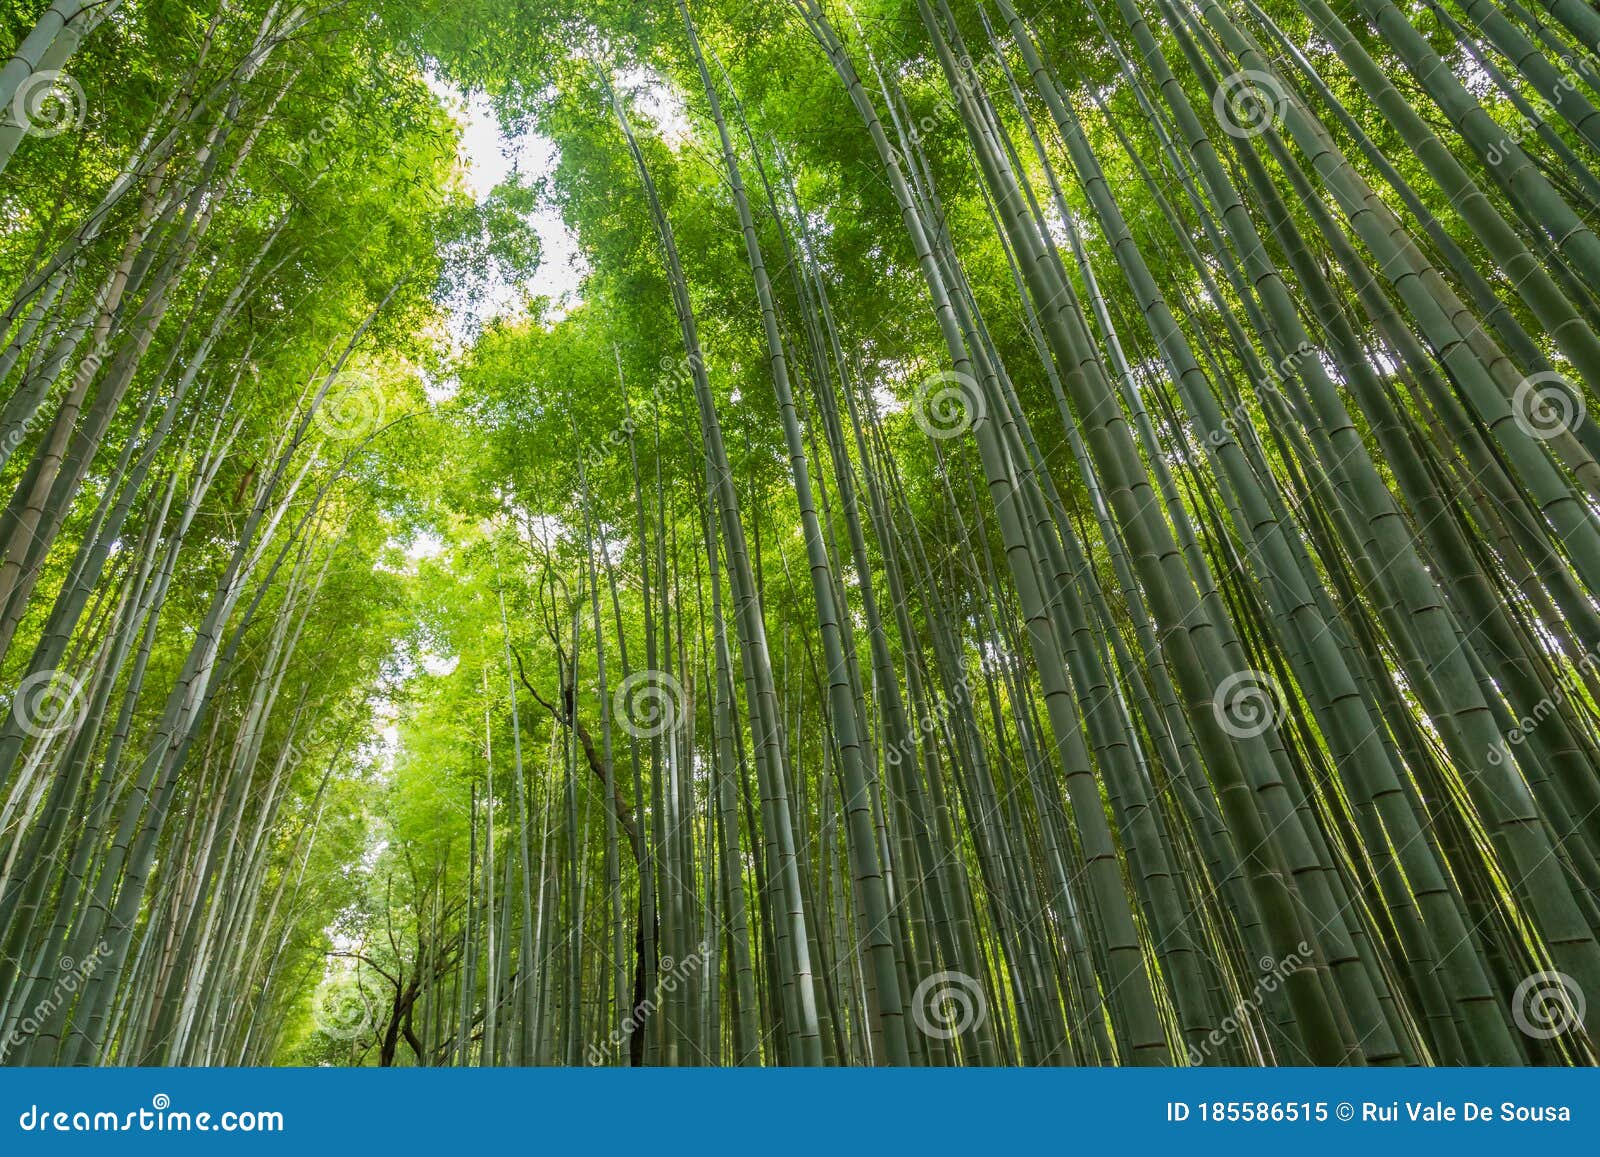 sagano bamboo forest